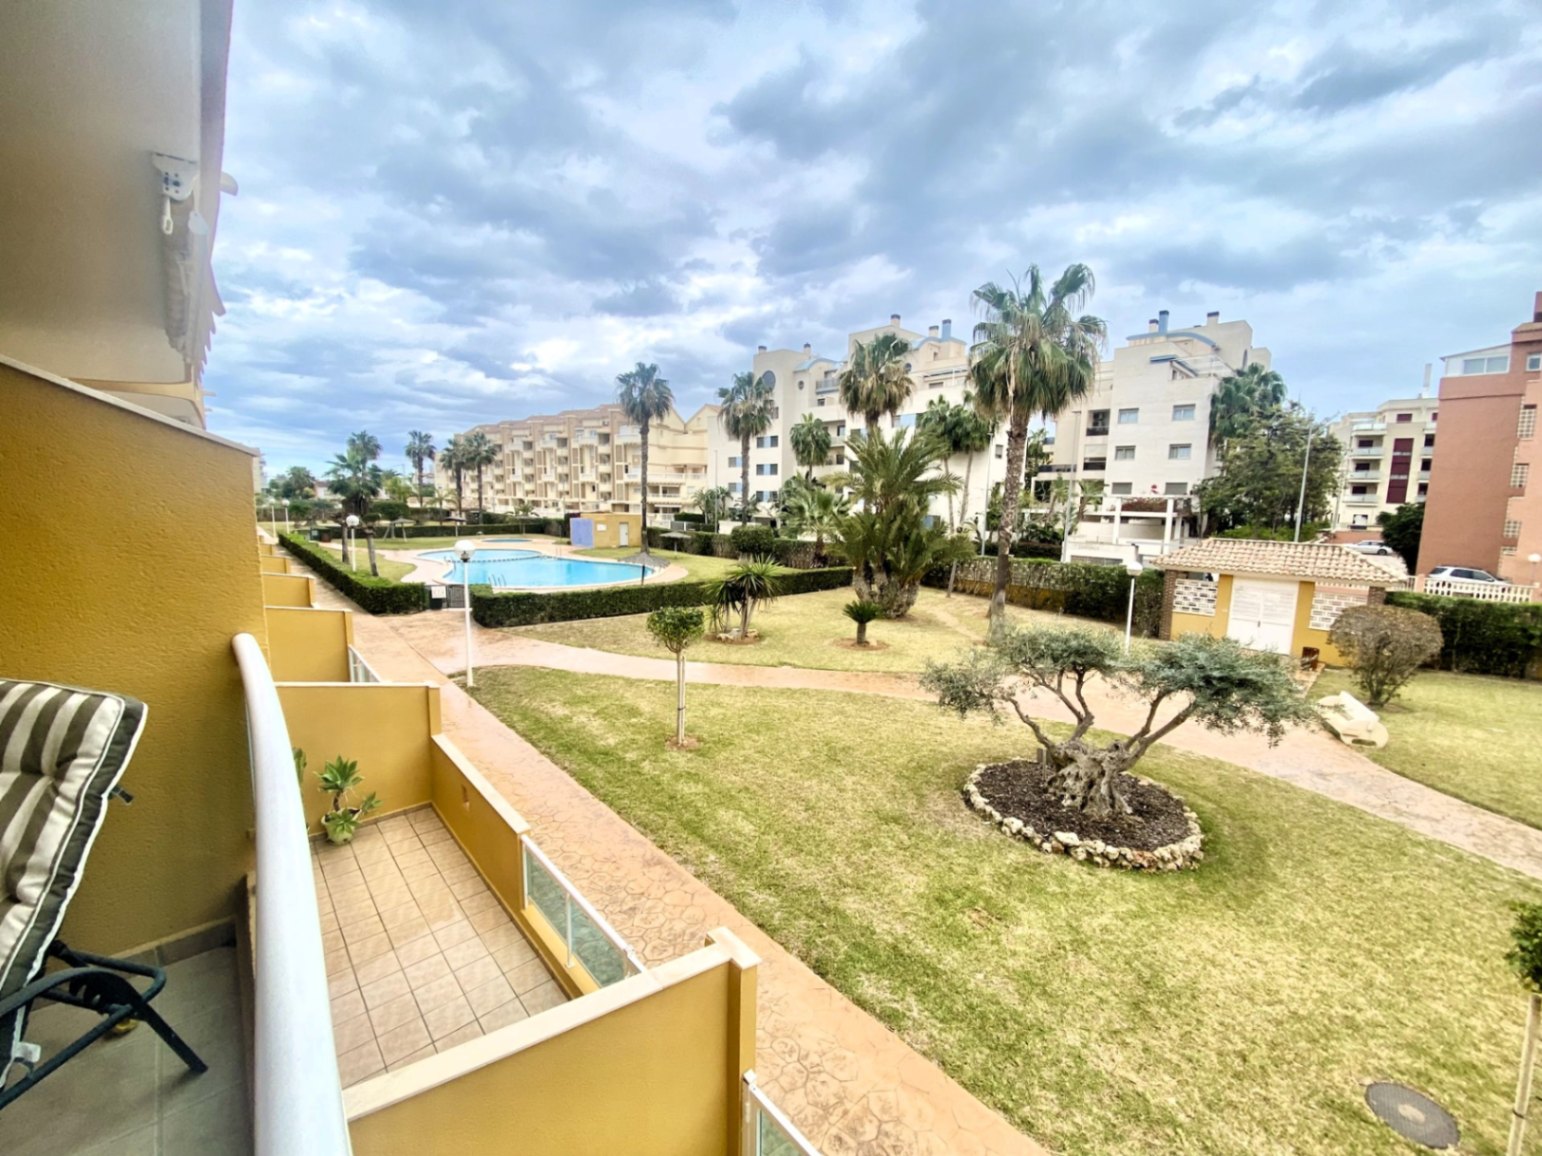 Appartement Playa Marinas km 0,5 in de buurt van de haven van Denia